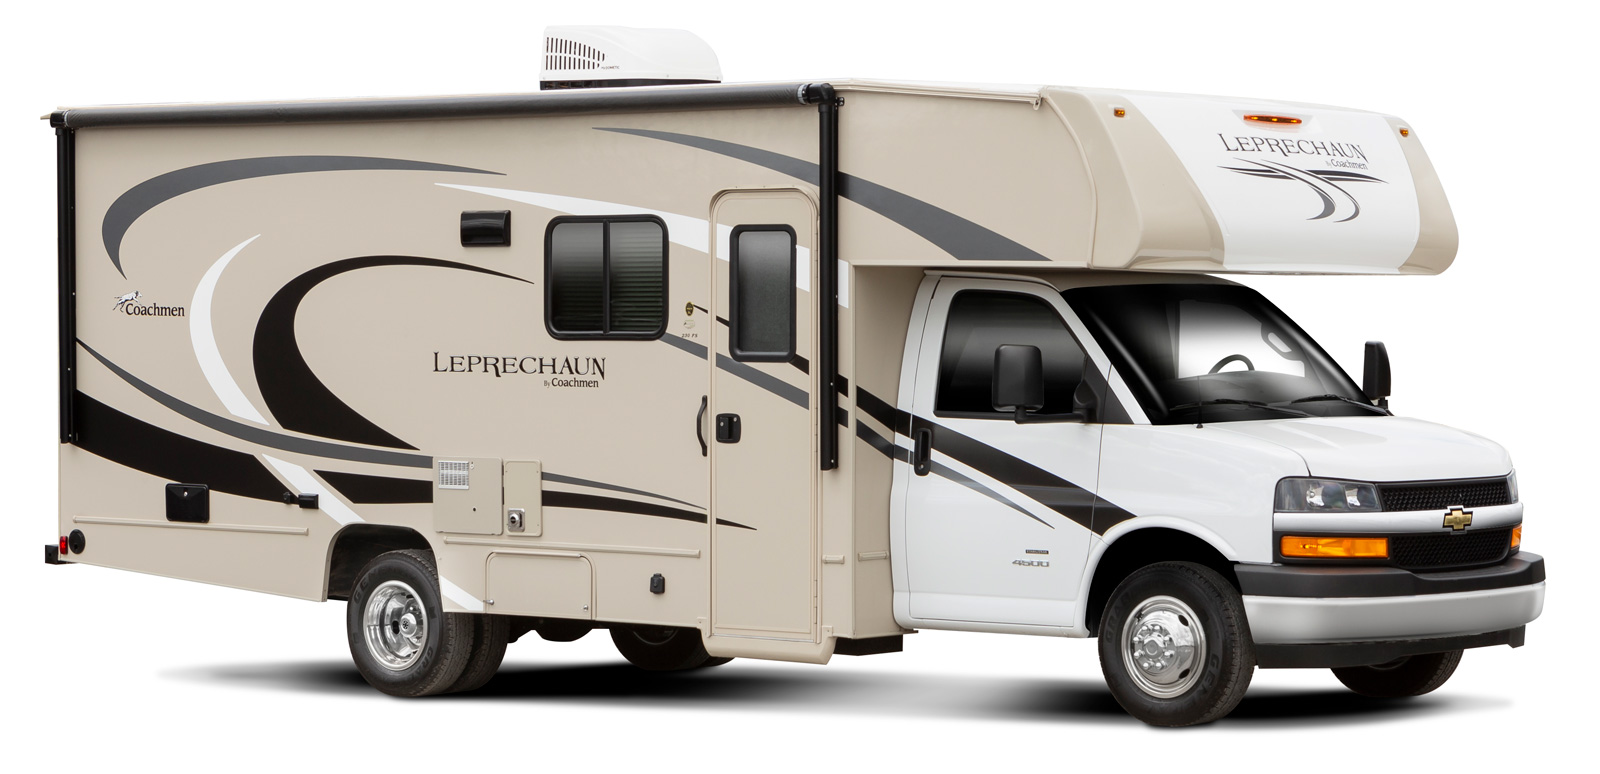 leprechaun travel trailer manufacturer